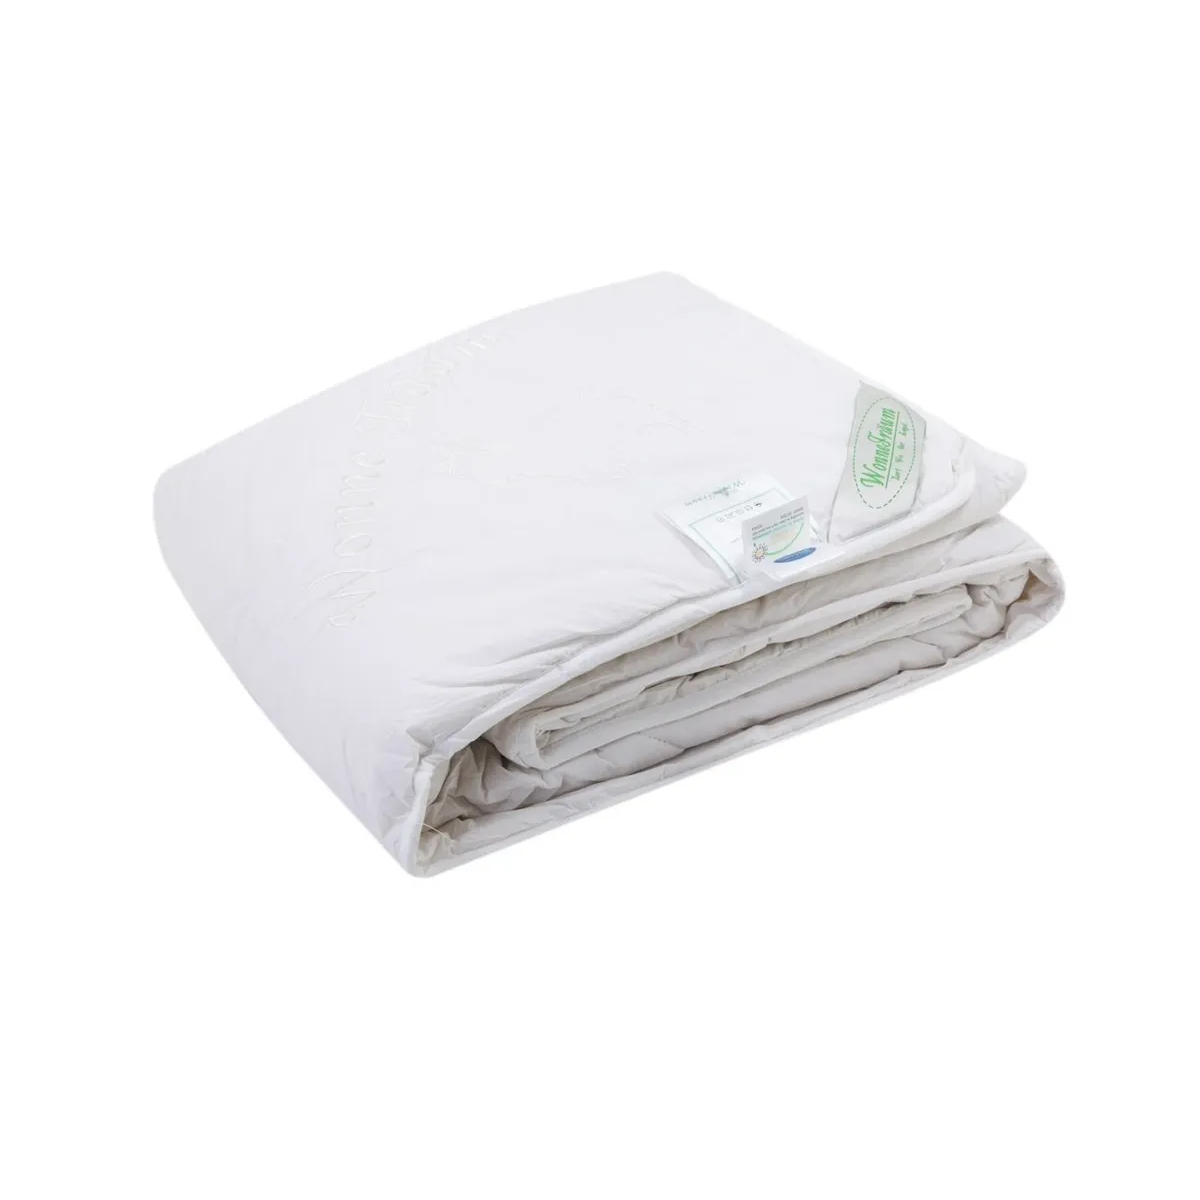 Одеяло кашемировое Wonne Traum белое 200х220 см (2709-136712) одеяло шерстяное wonne traum кремовое 150х210 см 2709 26244